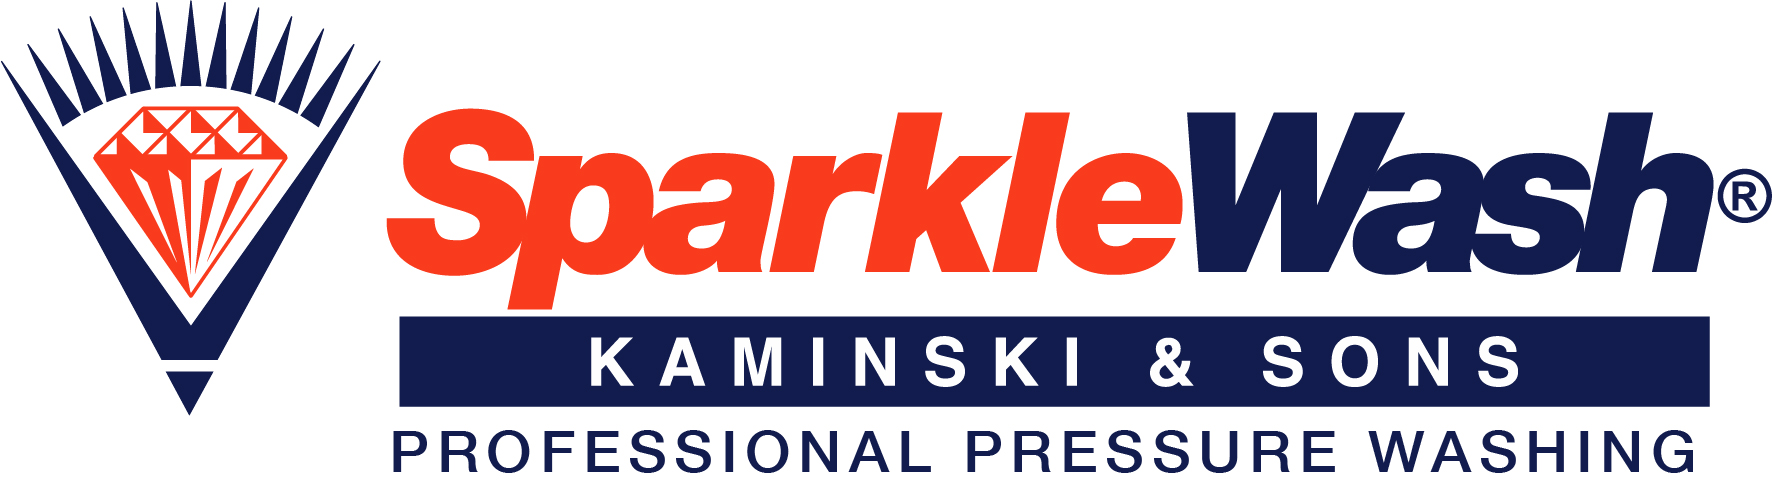 Sparkle Wash Kaminski & Sons